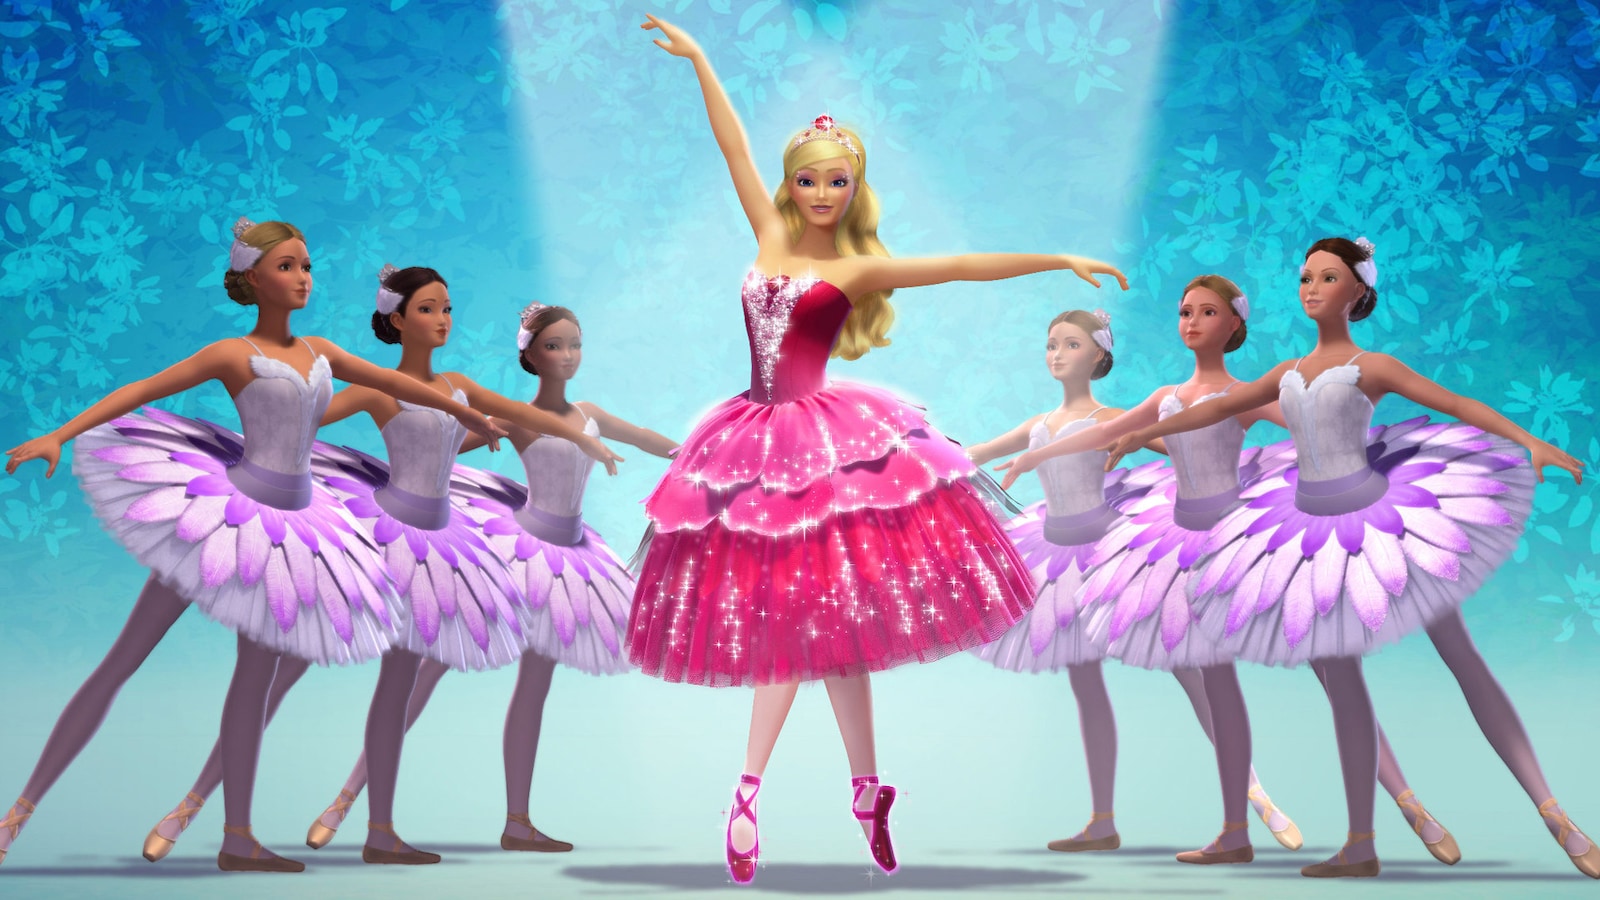 barbie-och-de-rosa-balettskorna-2013